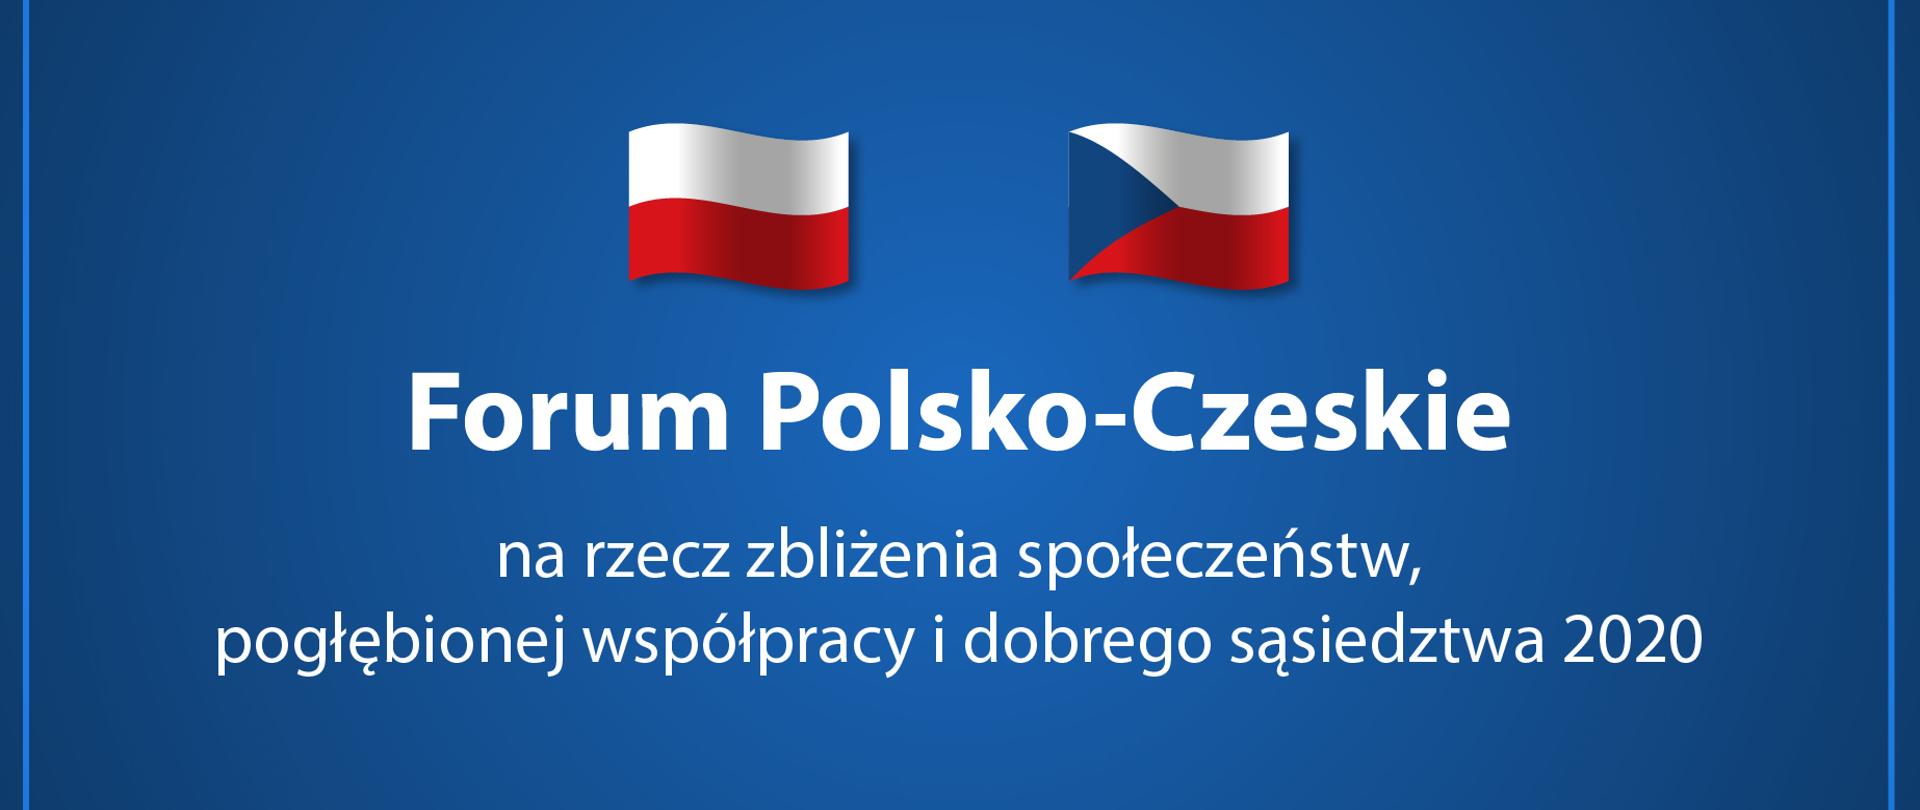 Niebieskie tło a na nim flaga Polski i Czech oraz tekst: "Forum Polsko-Czeskie na rzecz zbliżenia społeczeństw, pogłębionej współpracy i dobrego sąsiedztwa 2020".